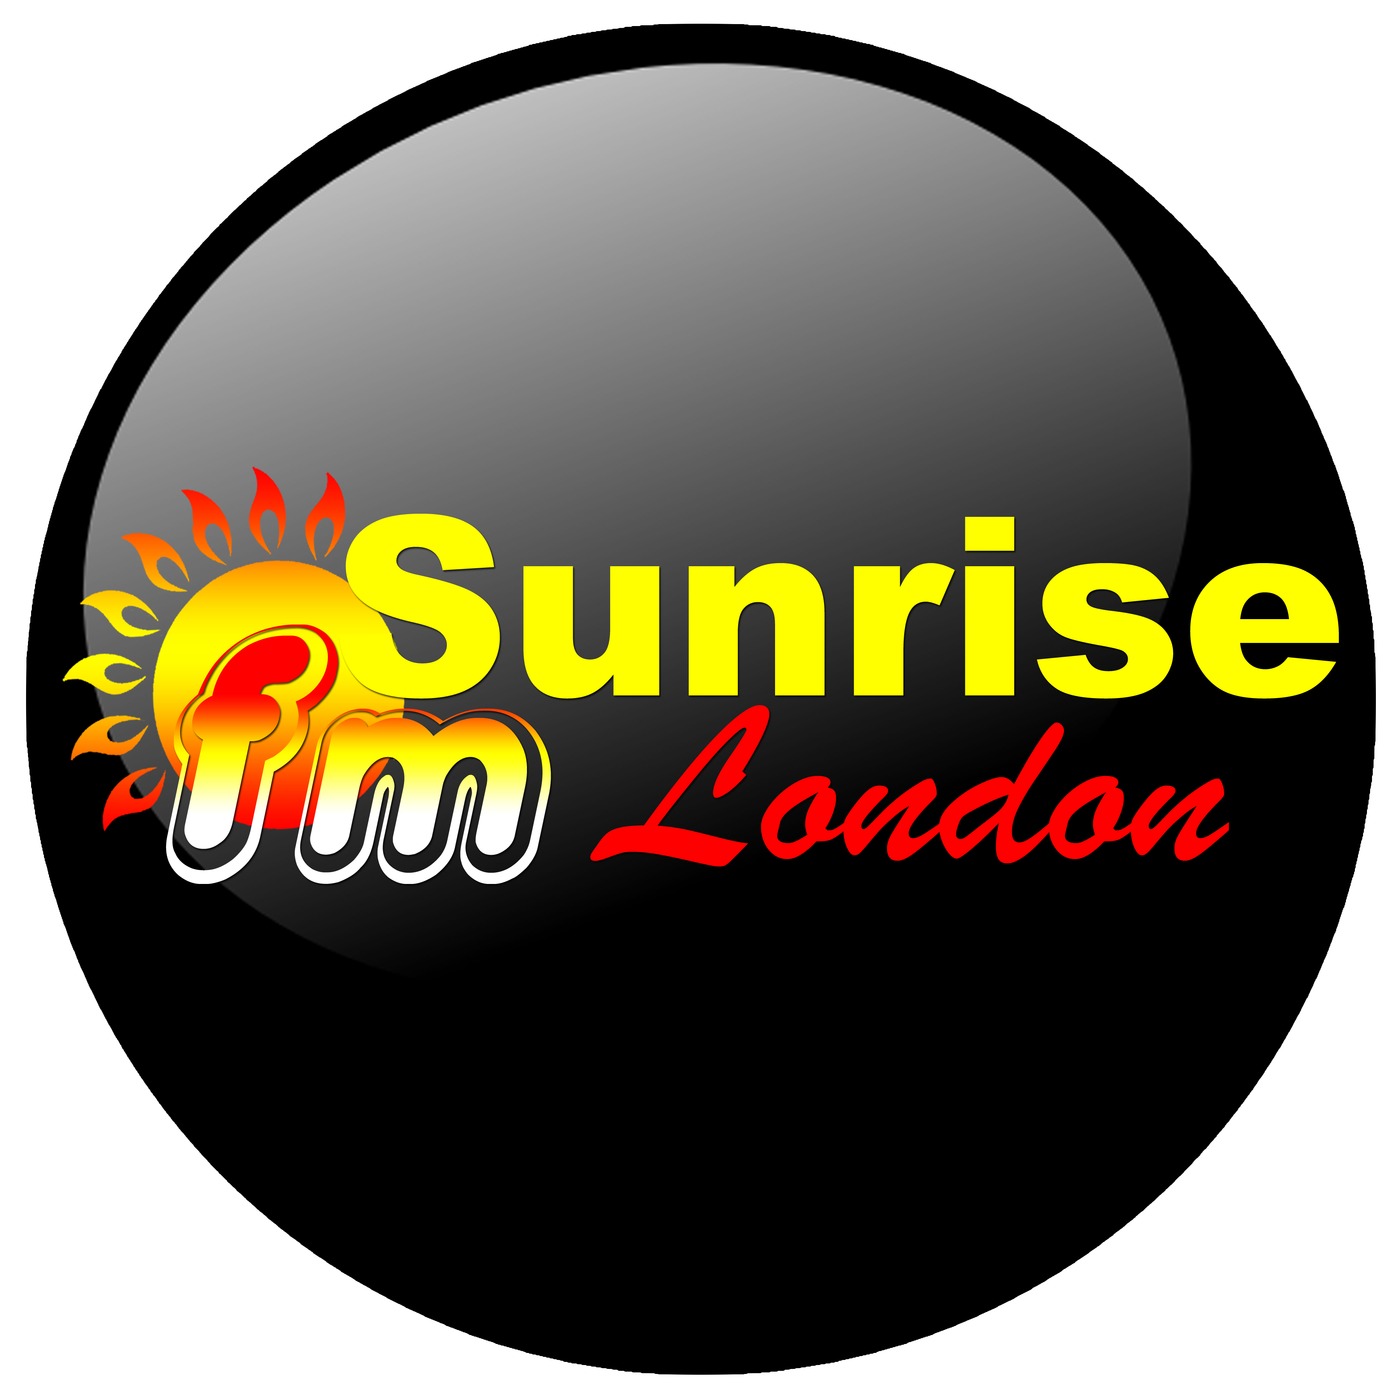 SunriseFm London